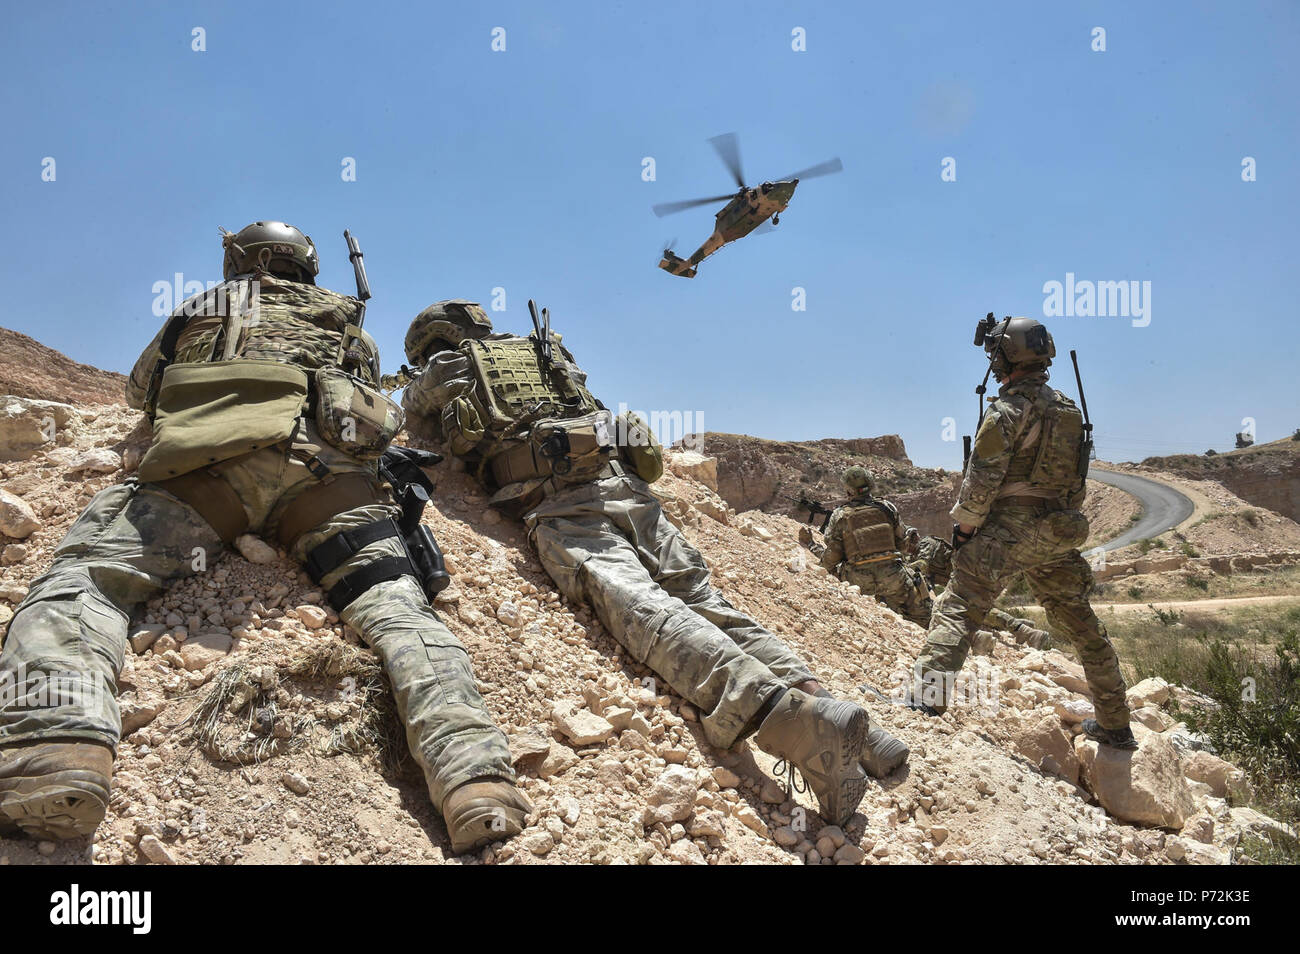 Les membres de la Forces armées jordaniennes de travail spécial, Air Force Special Tactics aviateurs avec la 24e Escadre d'opérations spéciales et des forces d'opérations spéciales italiennes assurent la sécurité à l'arrivée d'un Royal Jordanian Air Force UH-60L hélicoptère Blackhawk lors d'une mission de recherche et sauvetage de combat au lion avide 11 mai 2017, le roi Le roi Abdallah II Centre de formation d'opérations spéciales.hâte Lion est un exercice annuel le Commandement central américain en Jordanie visant à renforcer les relations militaires entre les Etats-Unis, la Jordanie et d'autres partenaires internationaux. La nouvelle édition est composé Banque D'Images